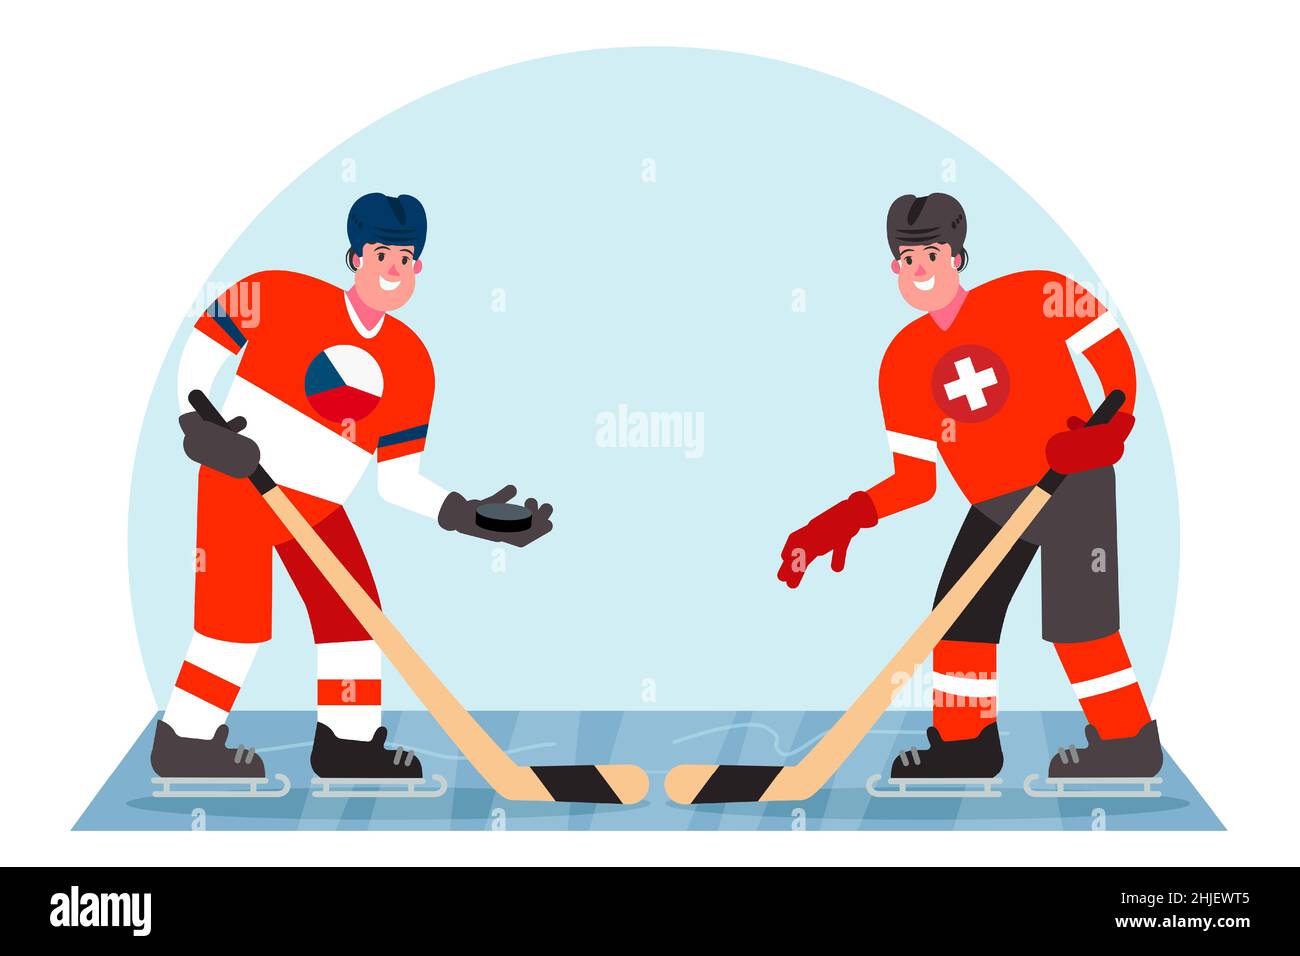 Eishockeyspieler. Wettbewerb zwischen der Tschechischen Republik und der Schweiz. Vektorgrafik in einem flachen Stil. Stock Vektor